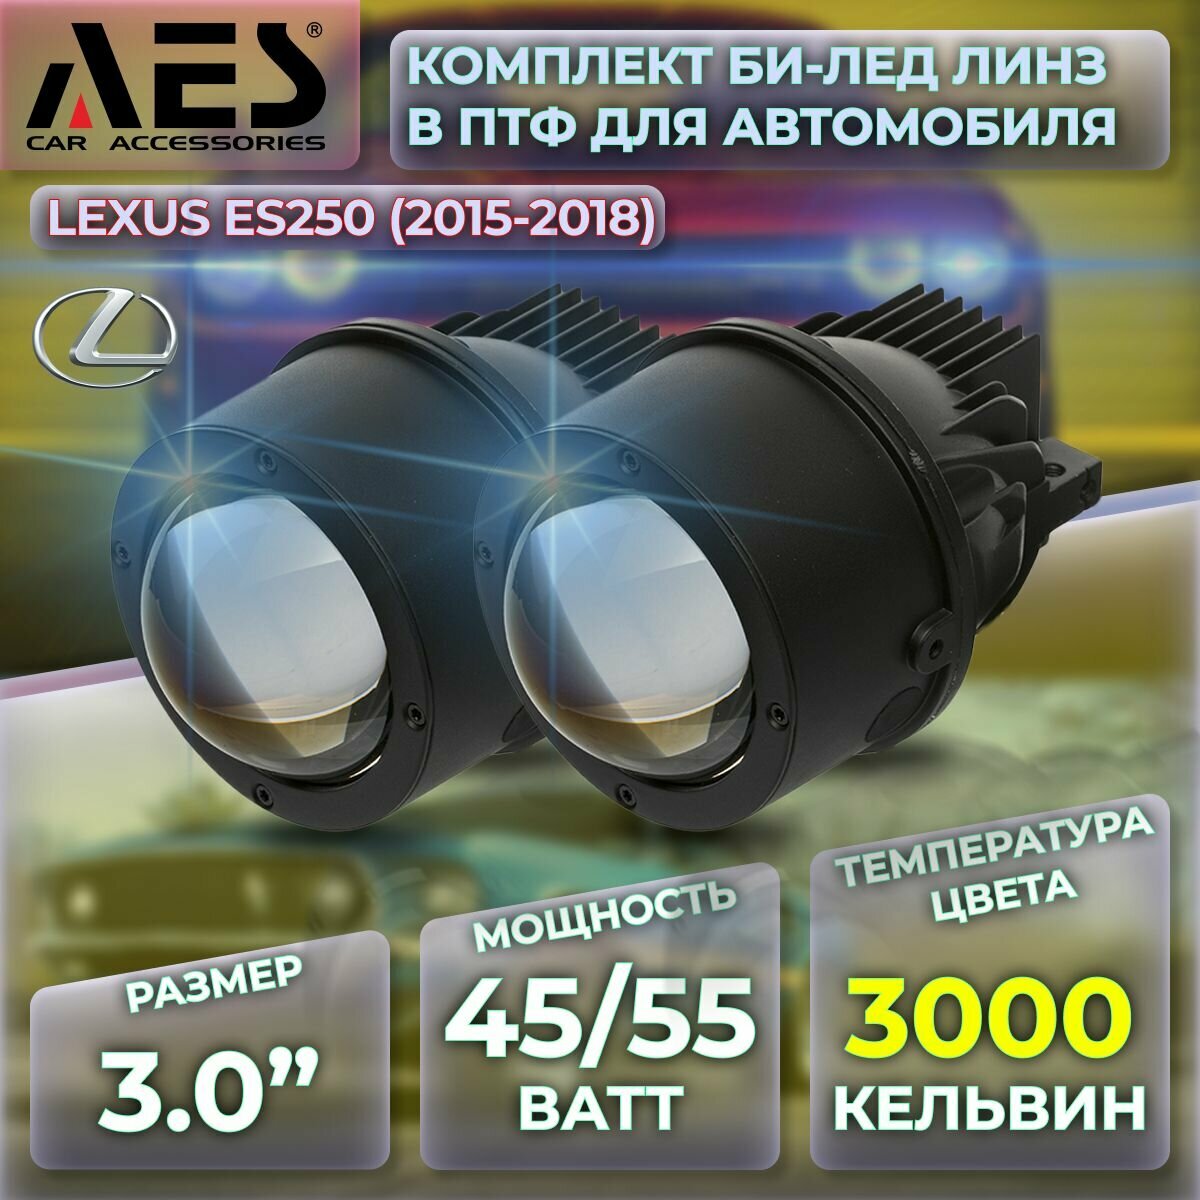 Комплект Би-лед линз в ПТФ для Lexus ES250 (2015-2018) Q8 Foglight Bi-LED Laser 3000K (2 модуля 2 кронштейна)